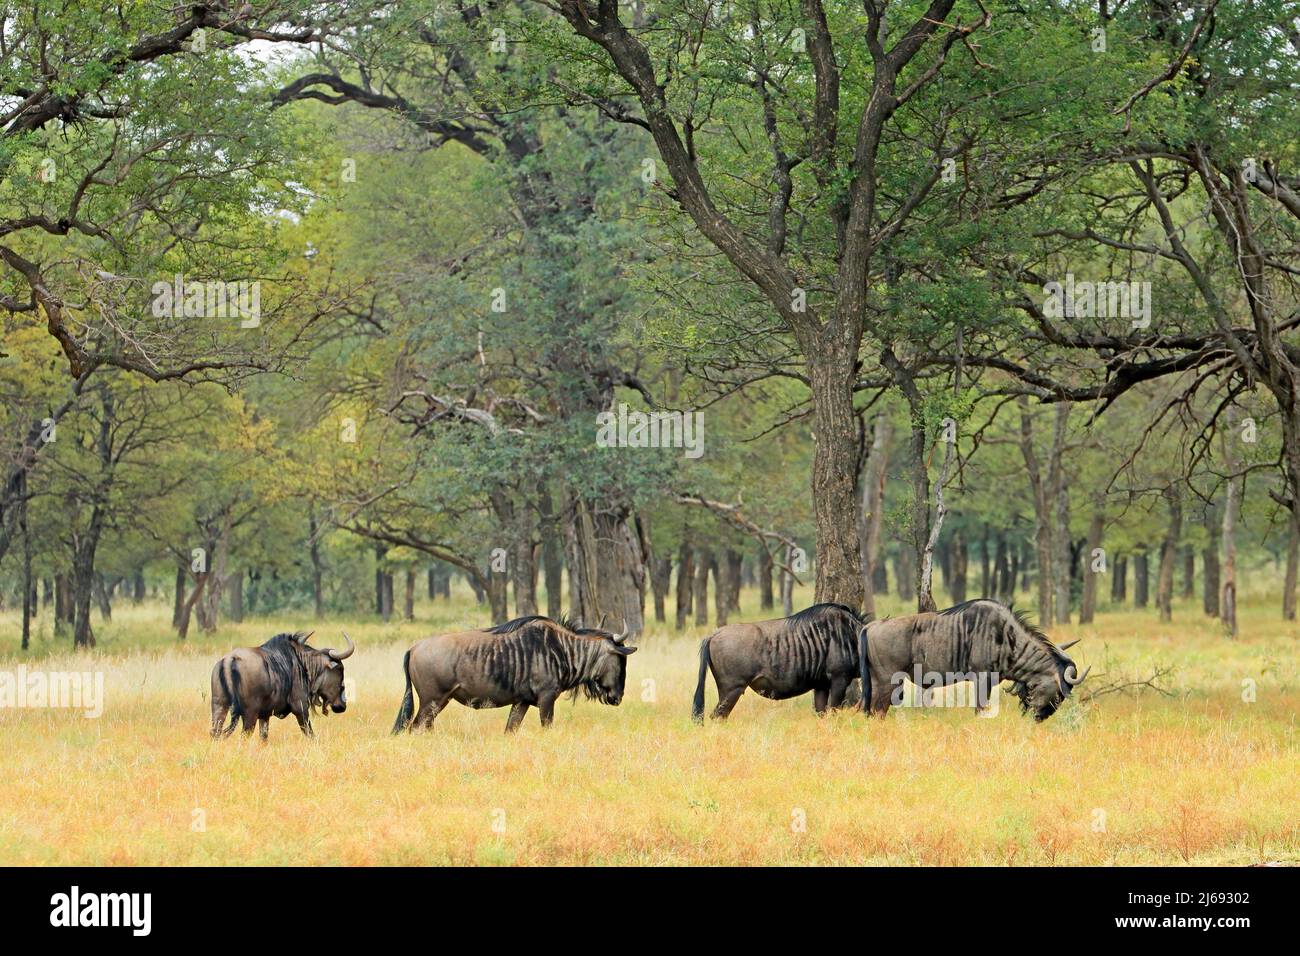 Blue wildebeest (Connochaetes taurinus) herd in savannah landscape, South Africa Stock Photo